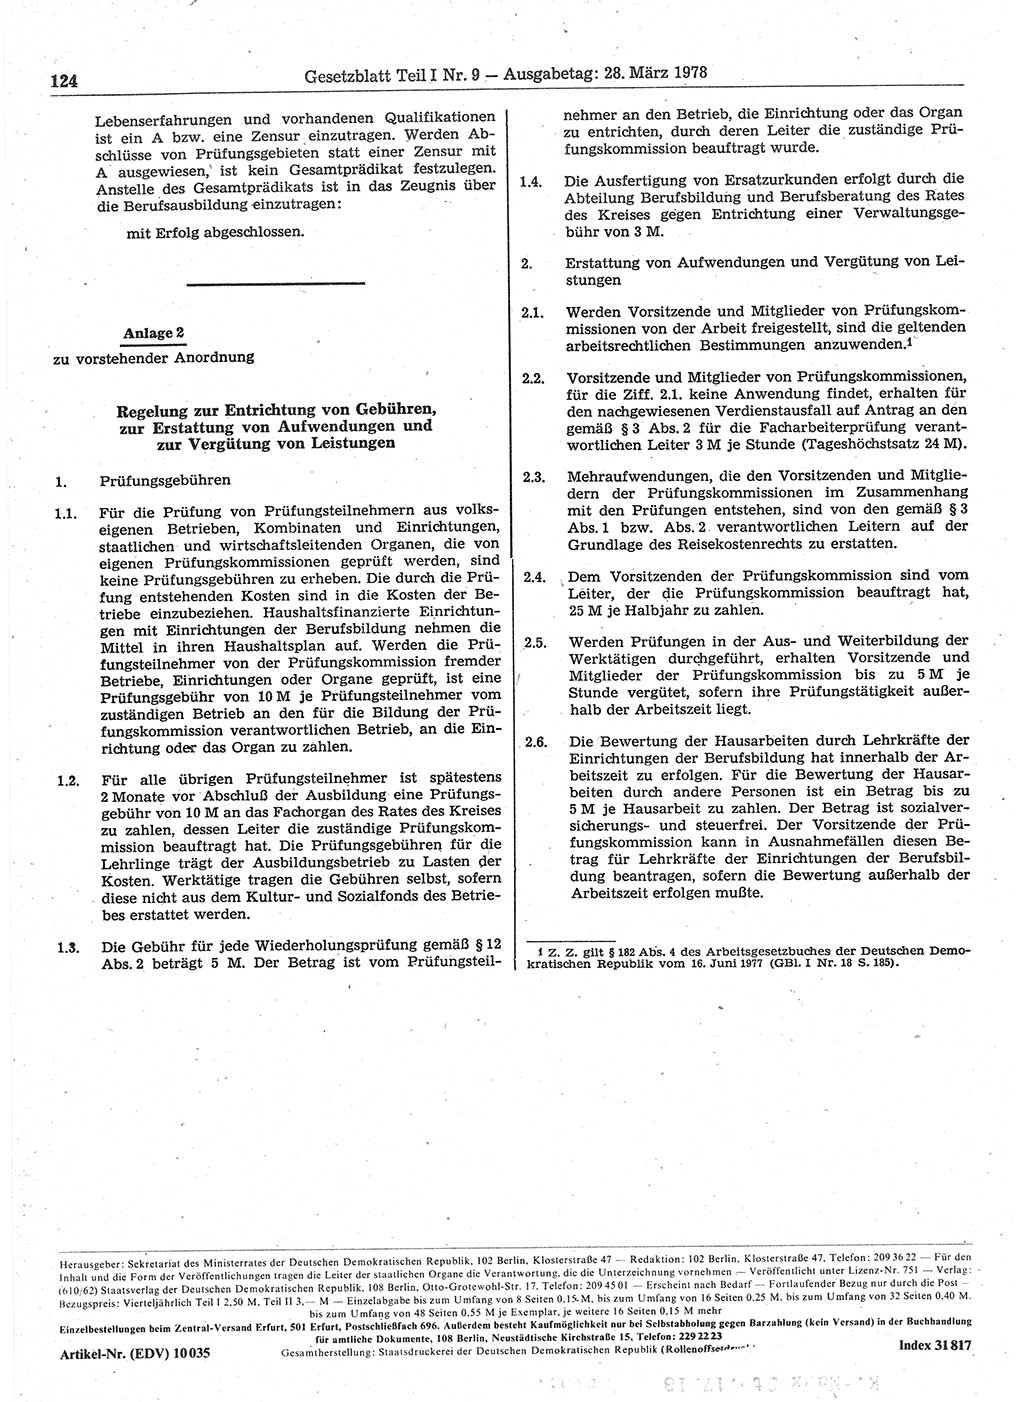 Gesetzblatt (GBl.) der Deutschen Demokratischen Republik (DDR) Teil Ⅰ 1978, Seite 124 (GBl. DDR Ⅰ 1978, S. 124)